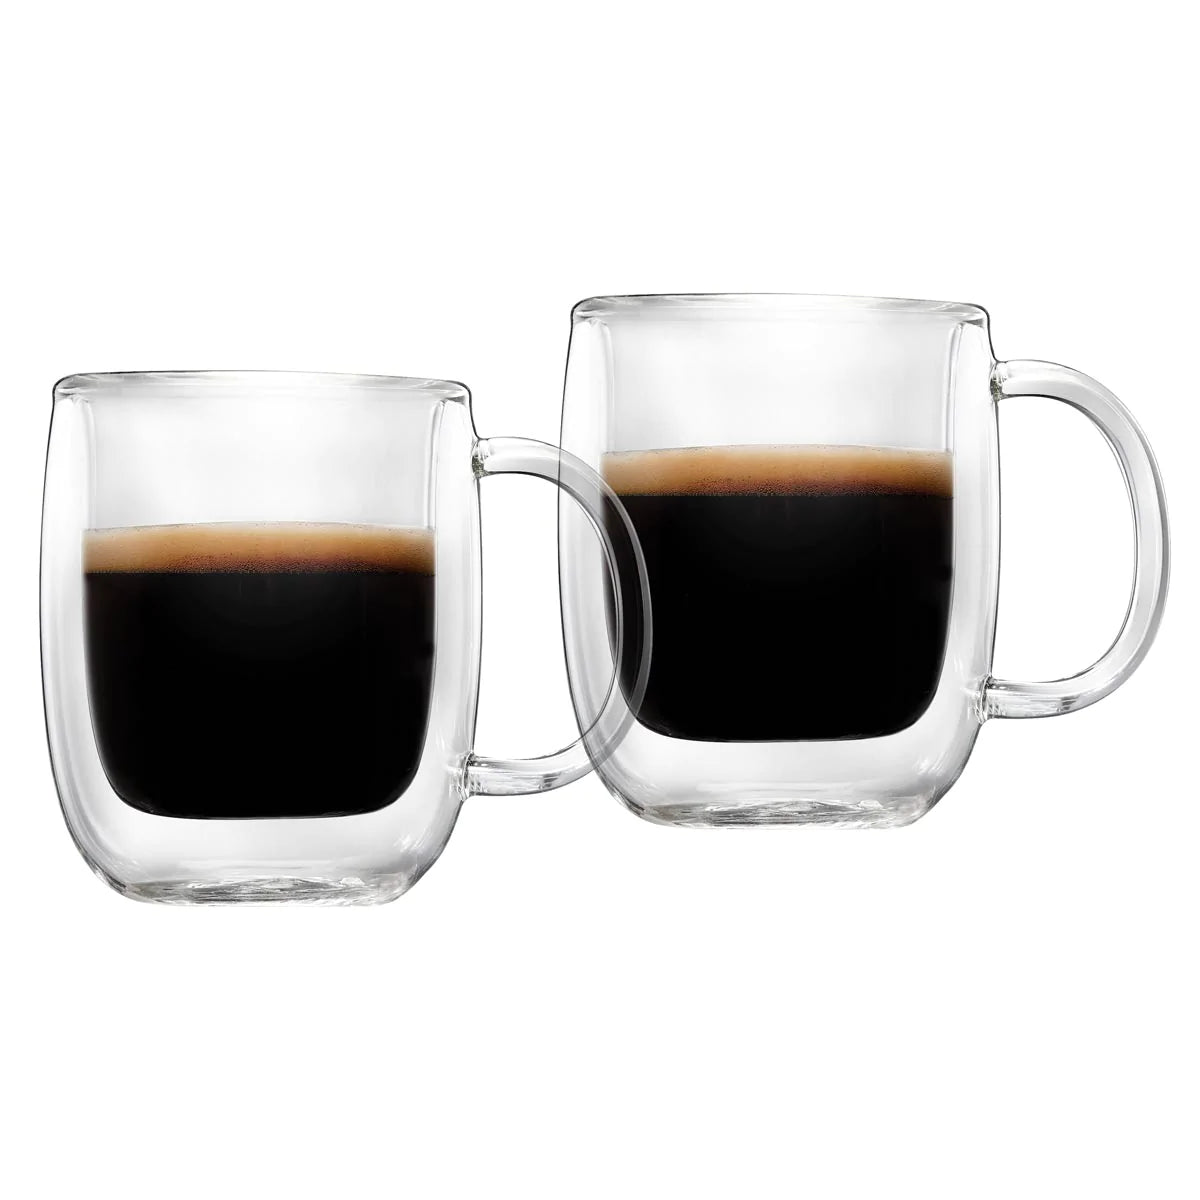 Tasses espresso à double paroi 80 ml, 2 unités, par Barista+